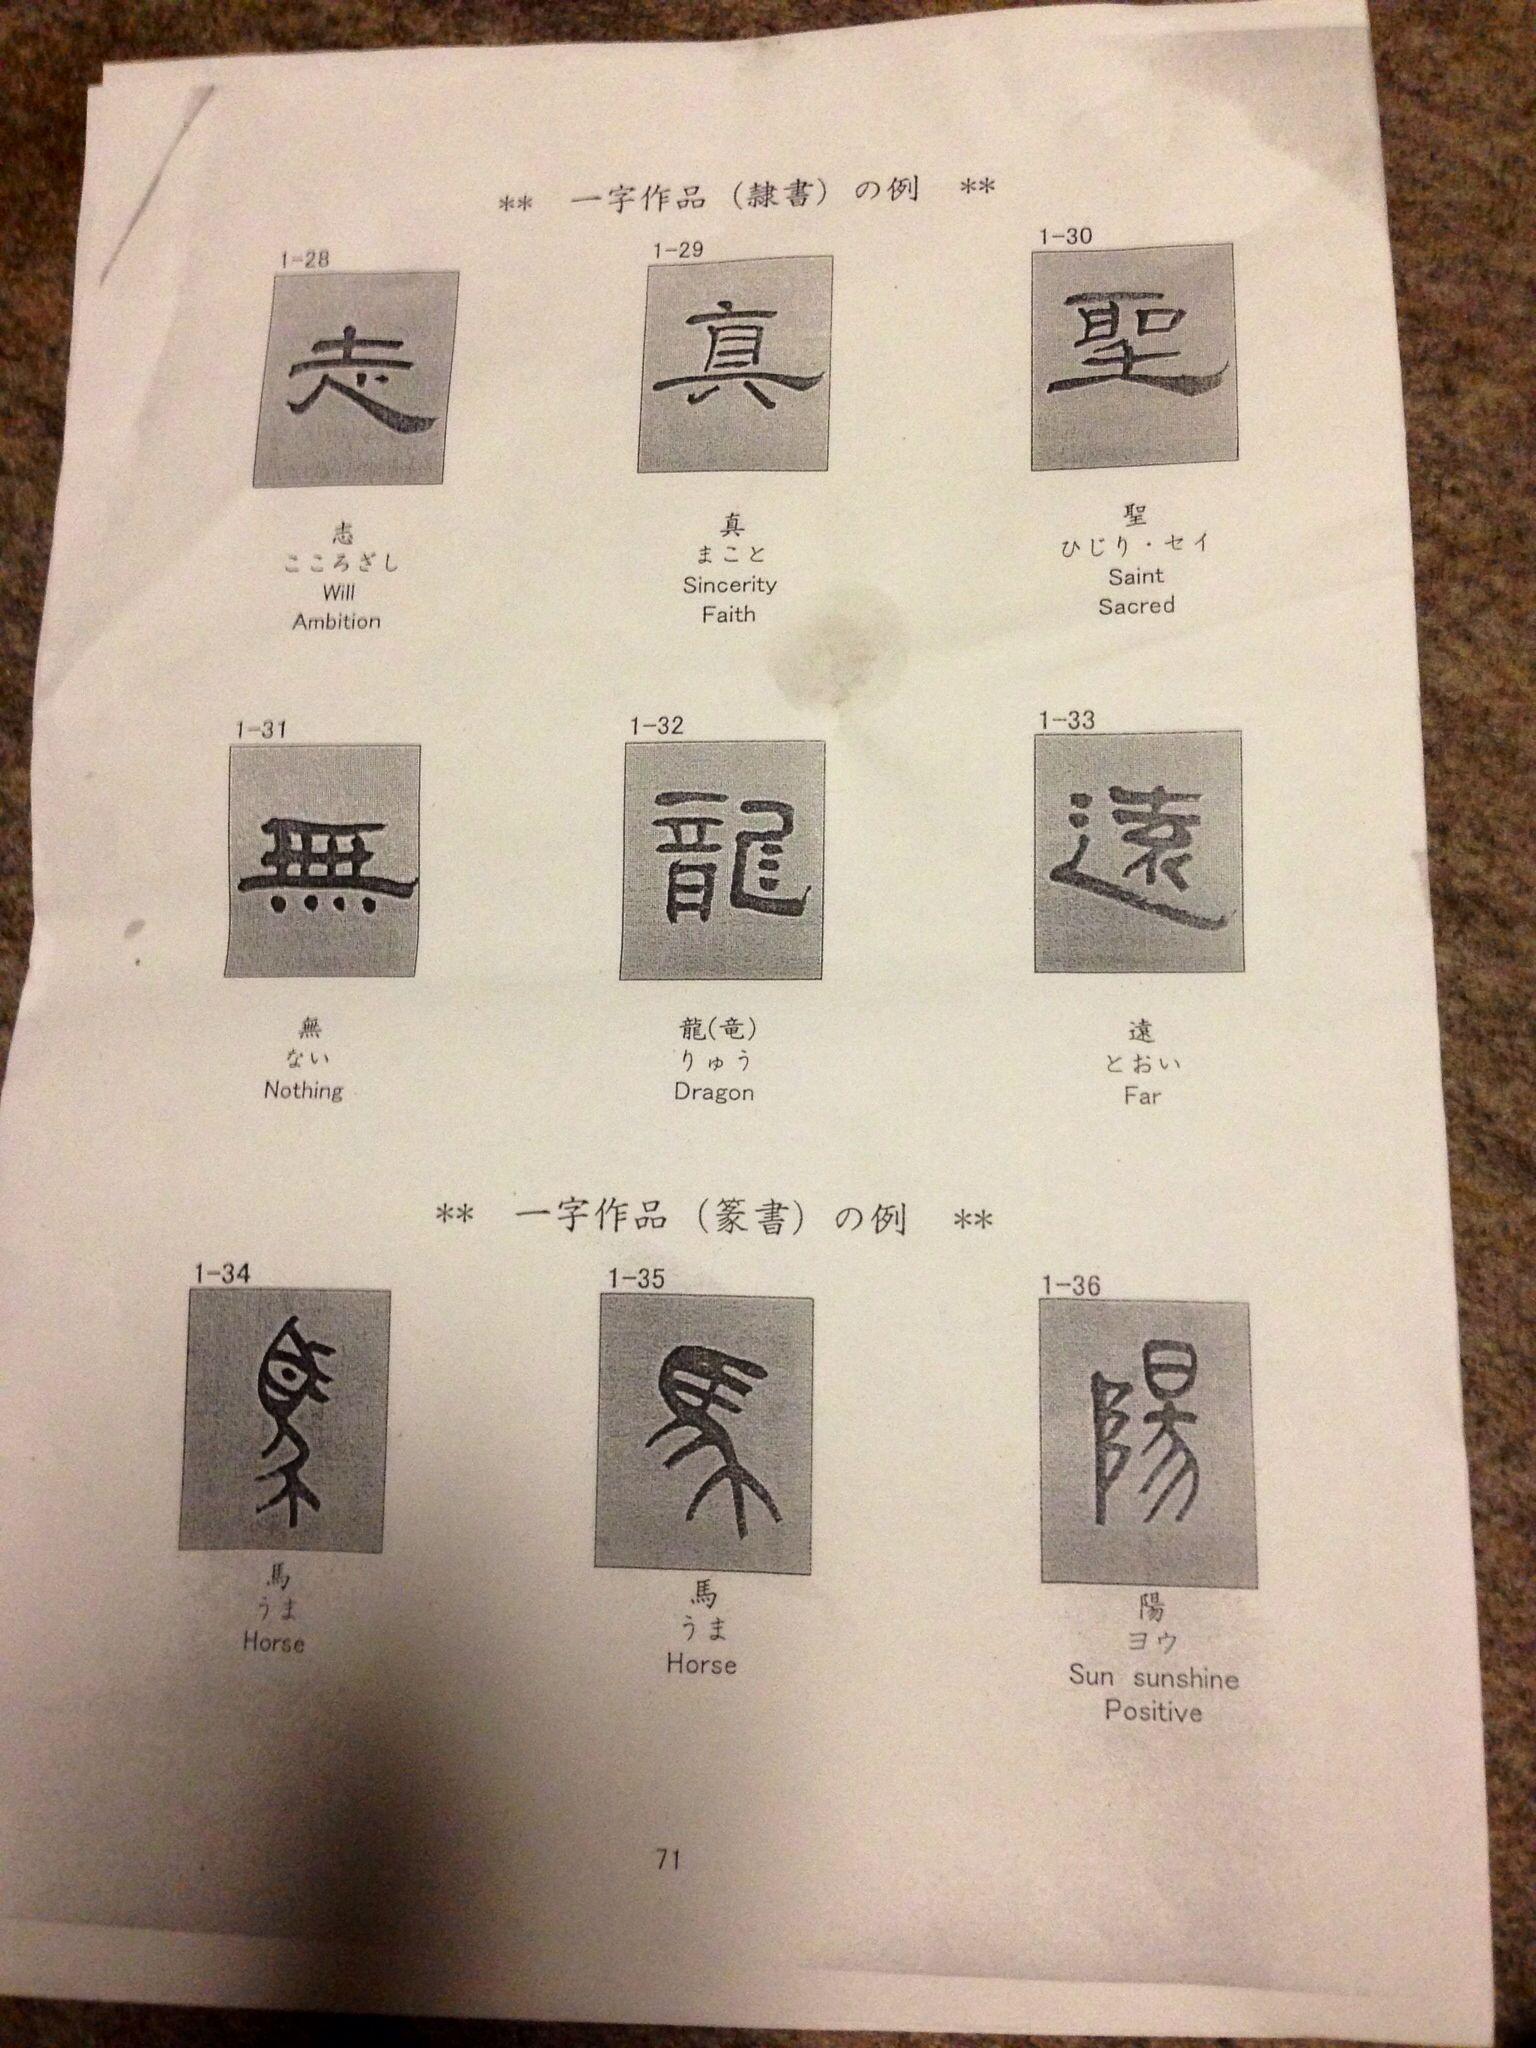 能否普及下日语的字体,以及怎样才能把日语写